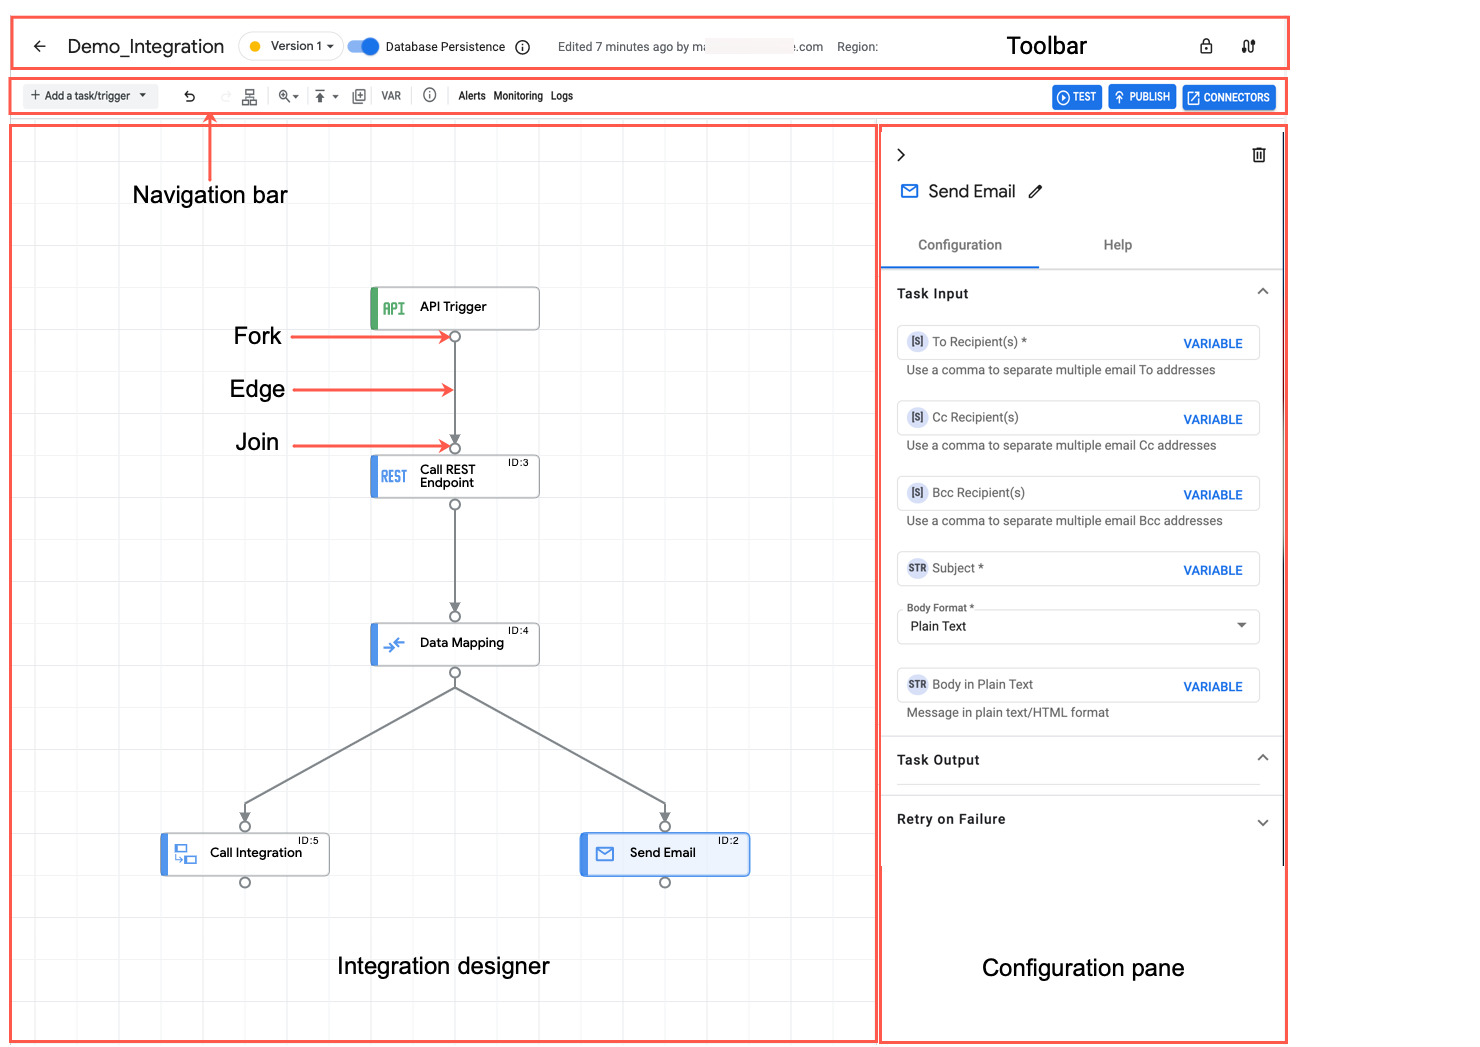 Integrations designer layout